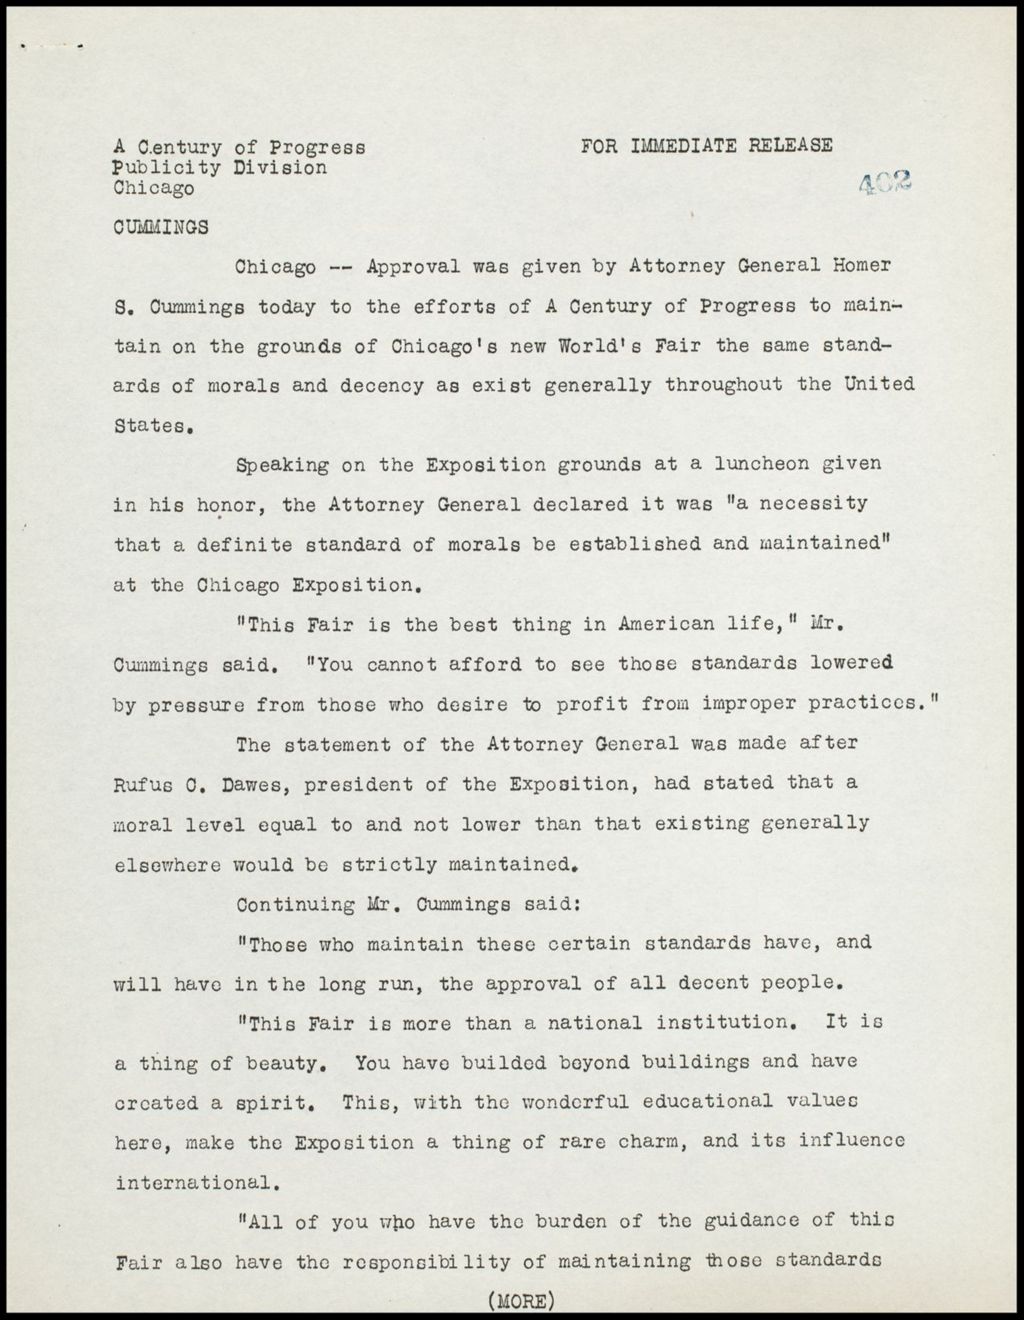 Management, 1933-1934 (Folder 14-147)